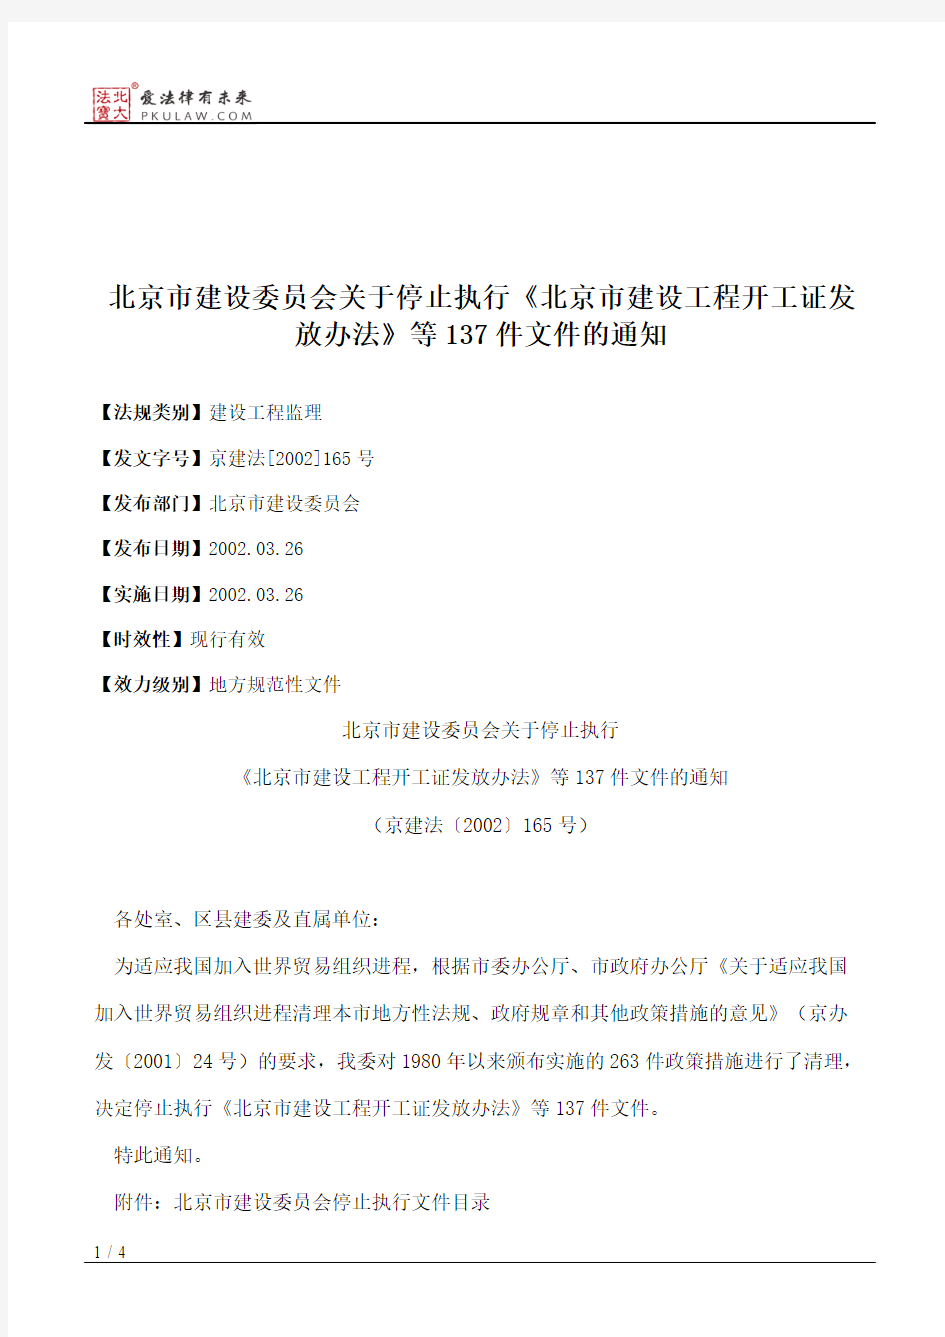 北京市建设委员会关于停止执行《北京市建设工程开工证发放办法》